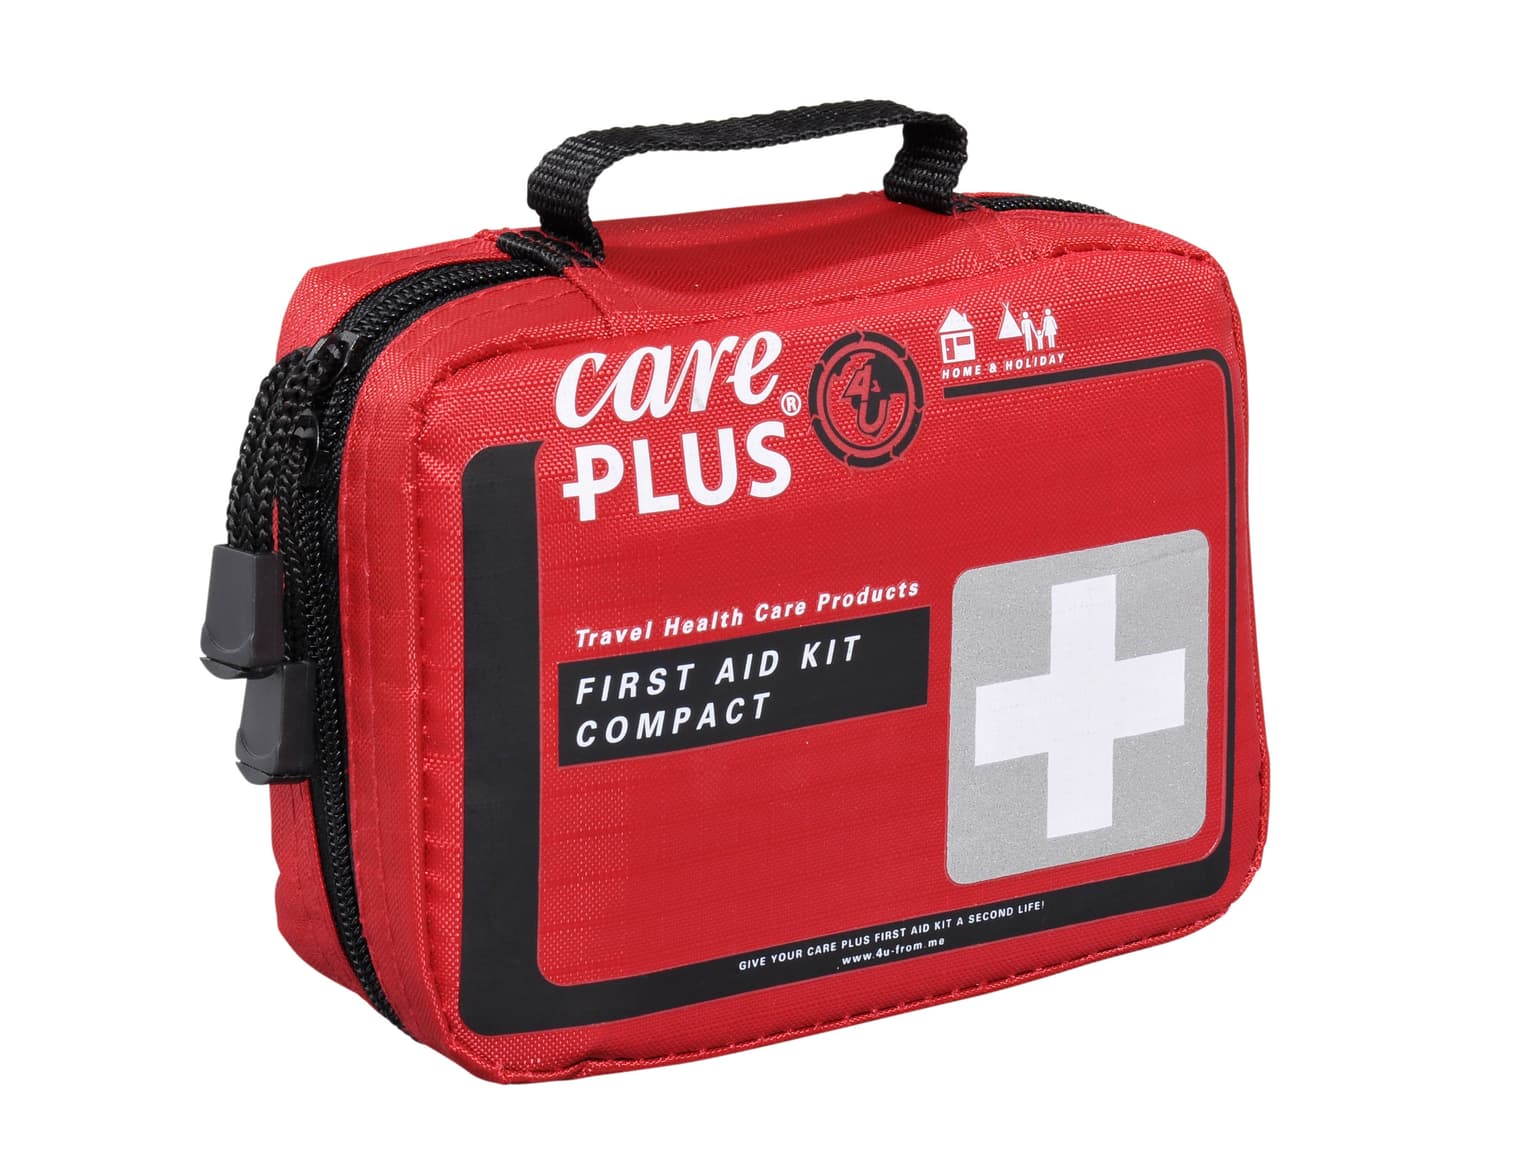 Care Plus Care Plus First Aid Kit Compact Trousse de premiers secours 1